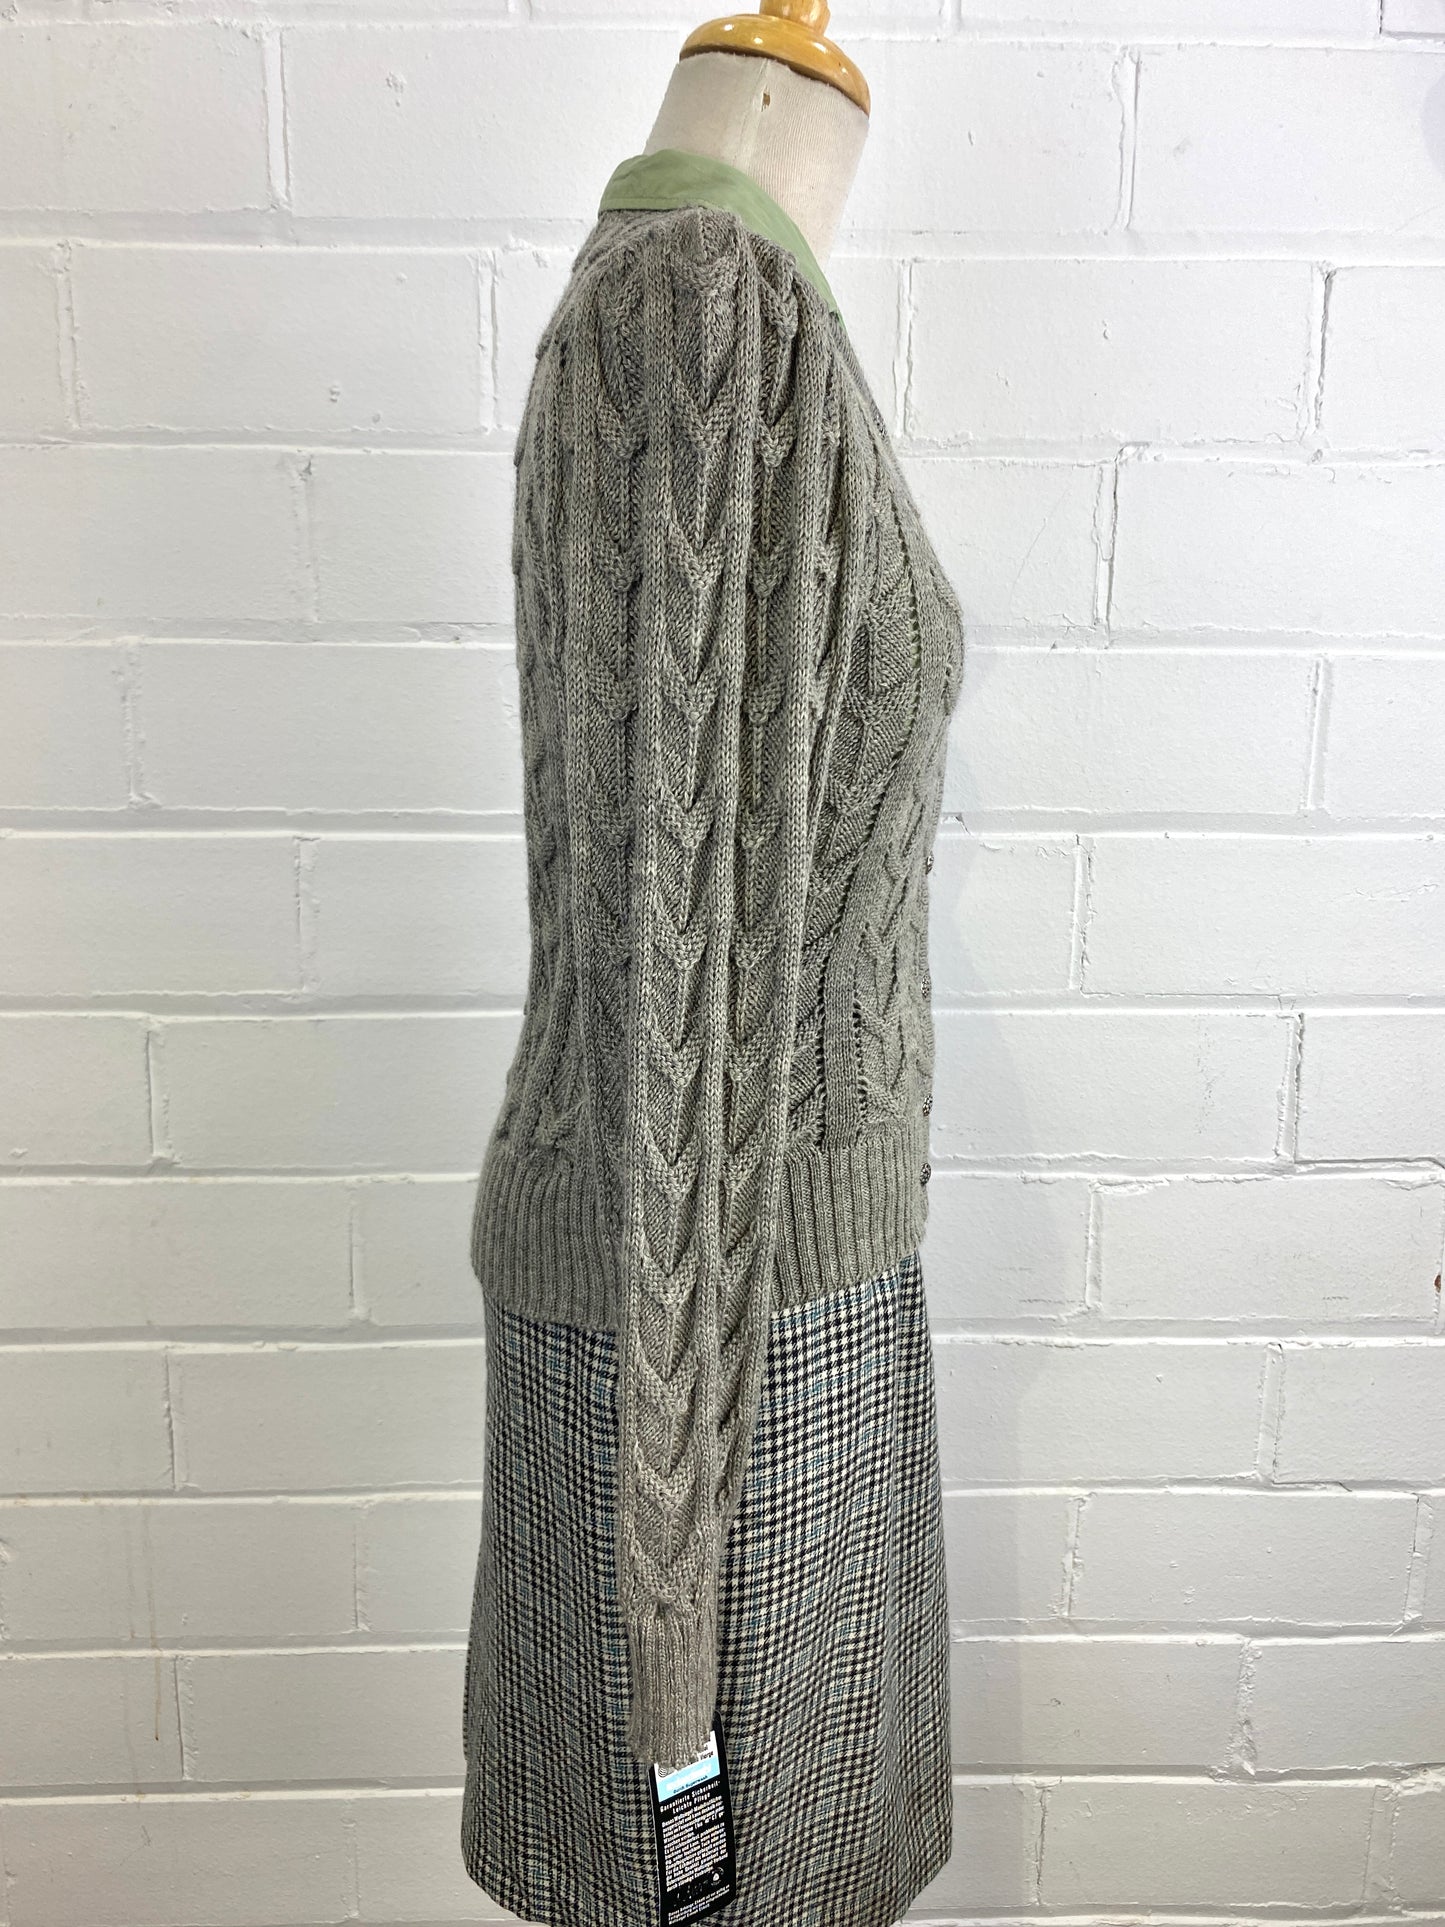 Vintage Deadstock Grey Austrian Wool Knit Cardigan, Doubles